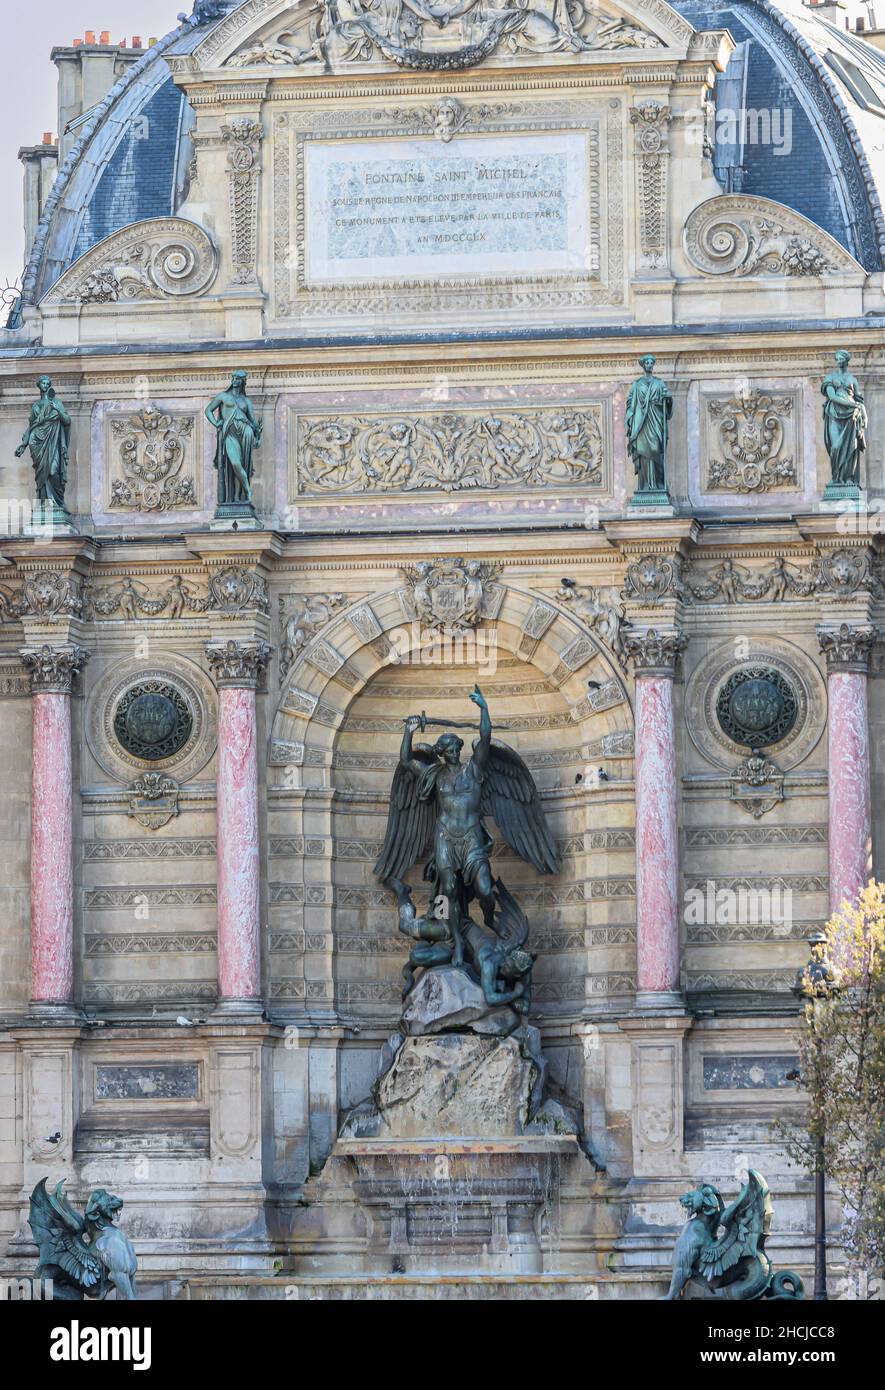 Fuente de san miguel de arquitectura ecléptica siglo XIX en Paris, Francia.JPG Stockfoto